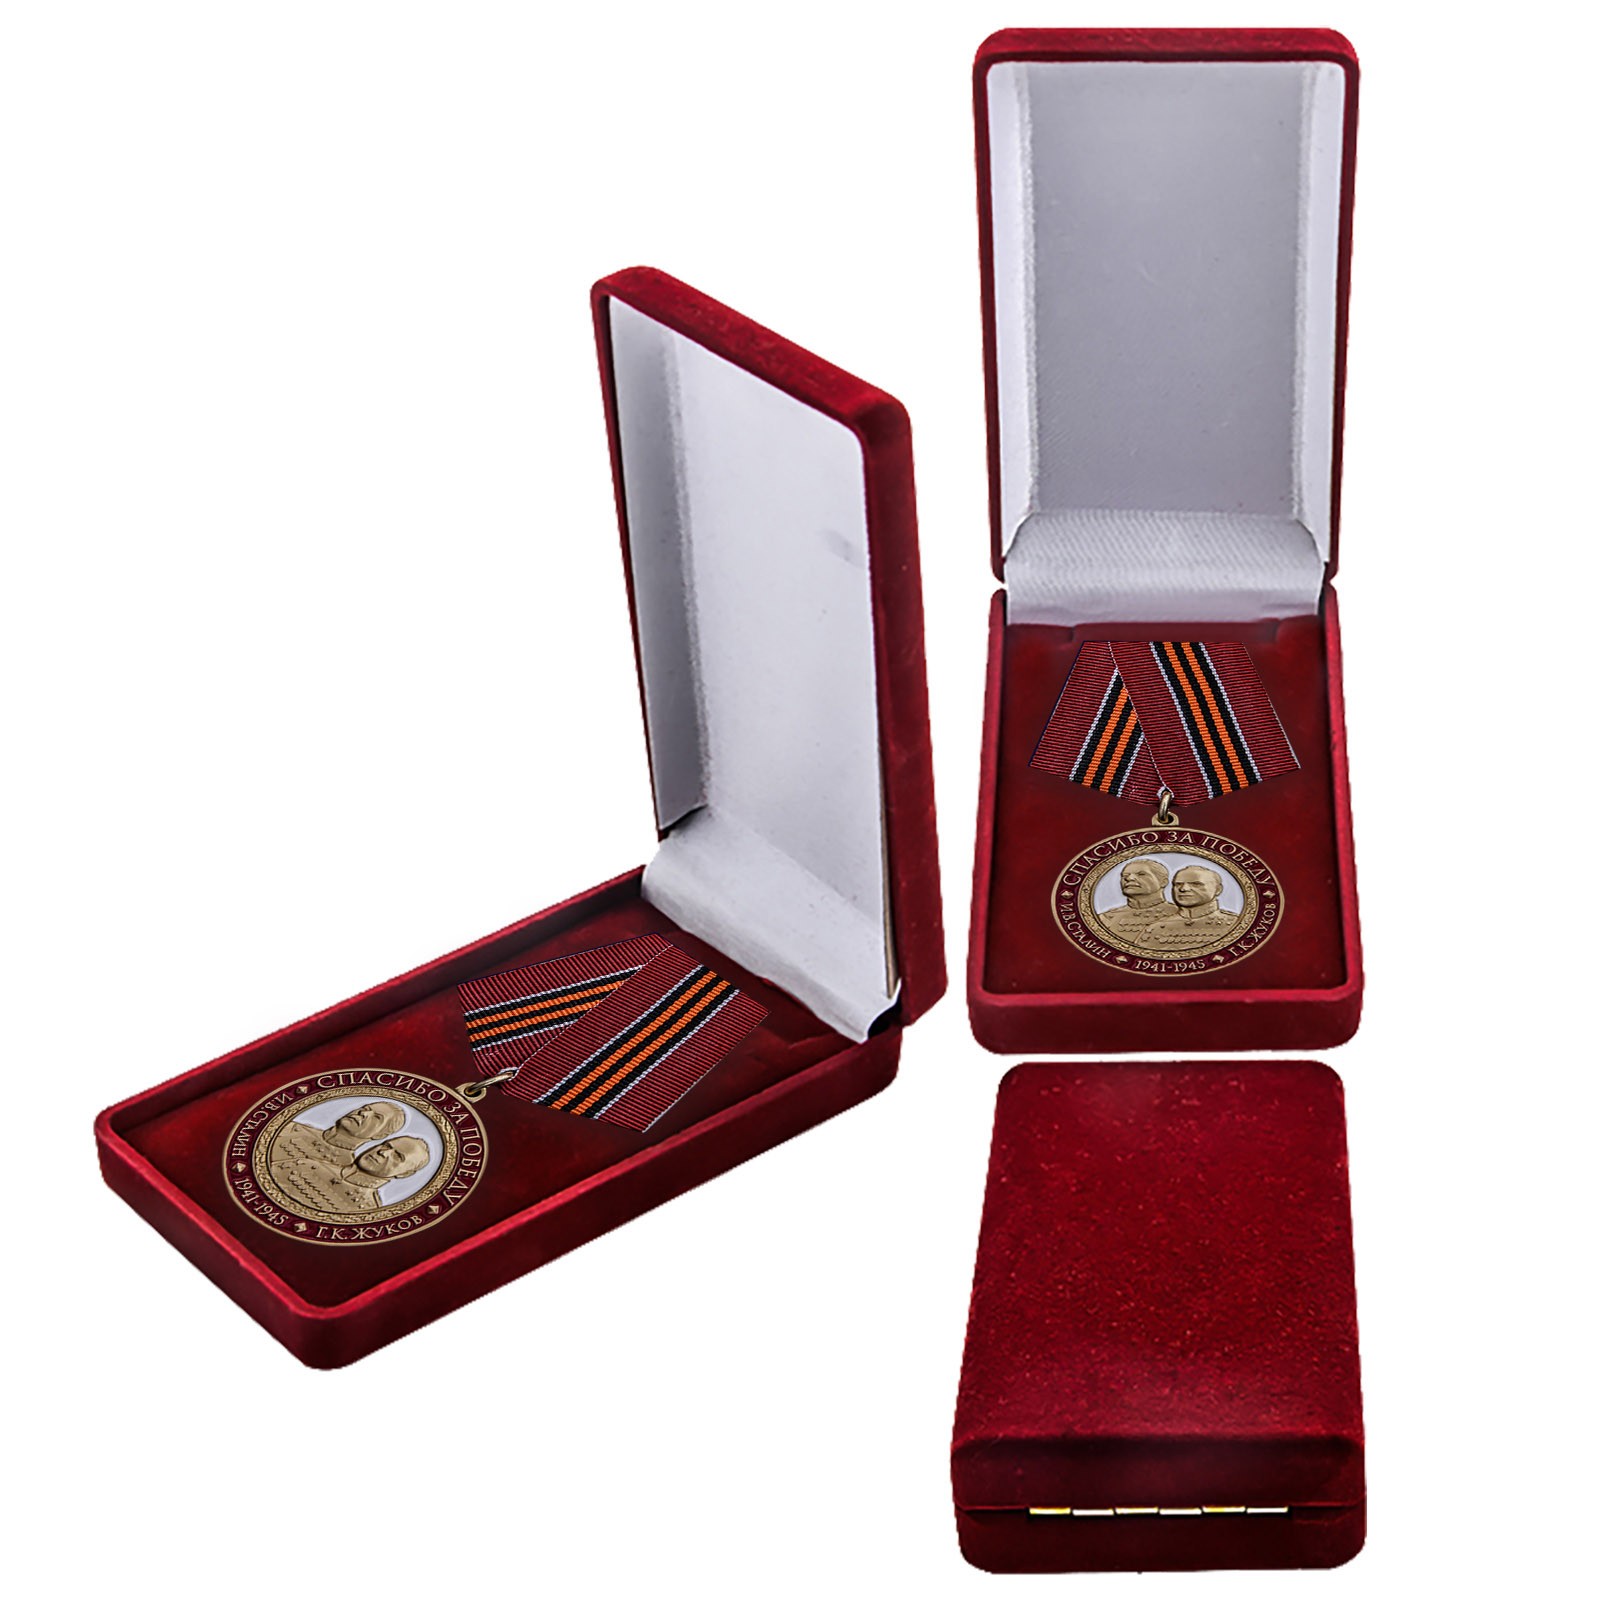 Купить памятную медаль "Спасибо за Победу" в бархатистом красном футляре онлайн